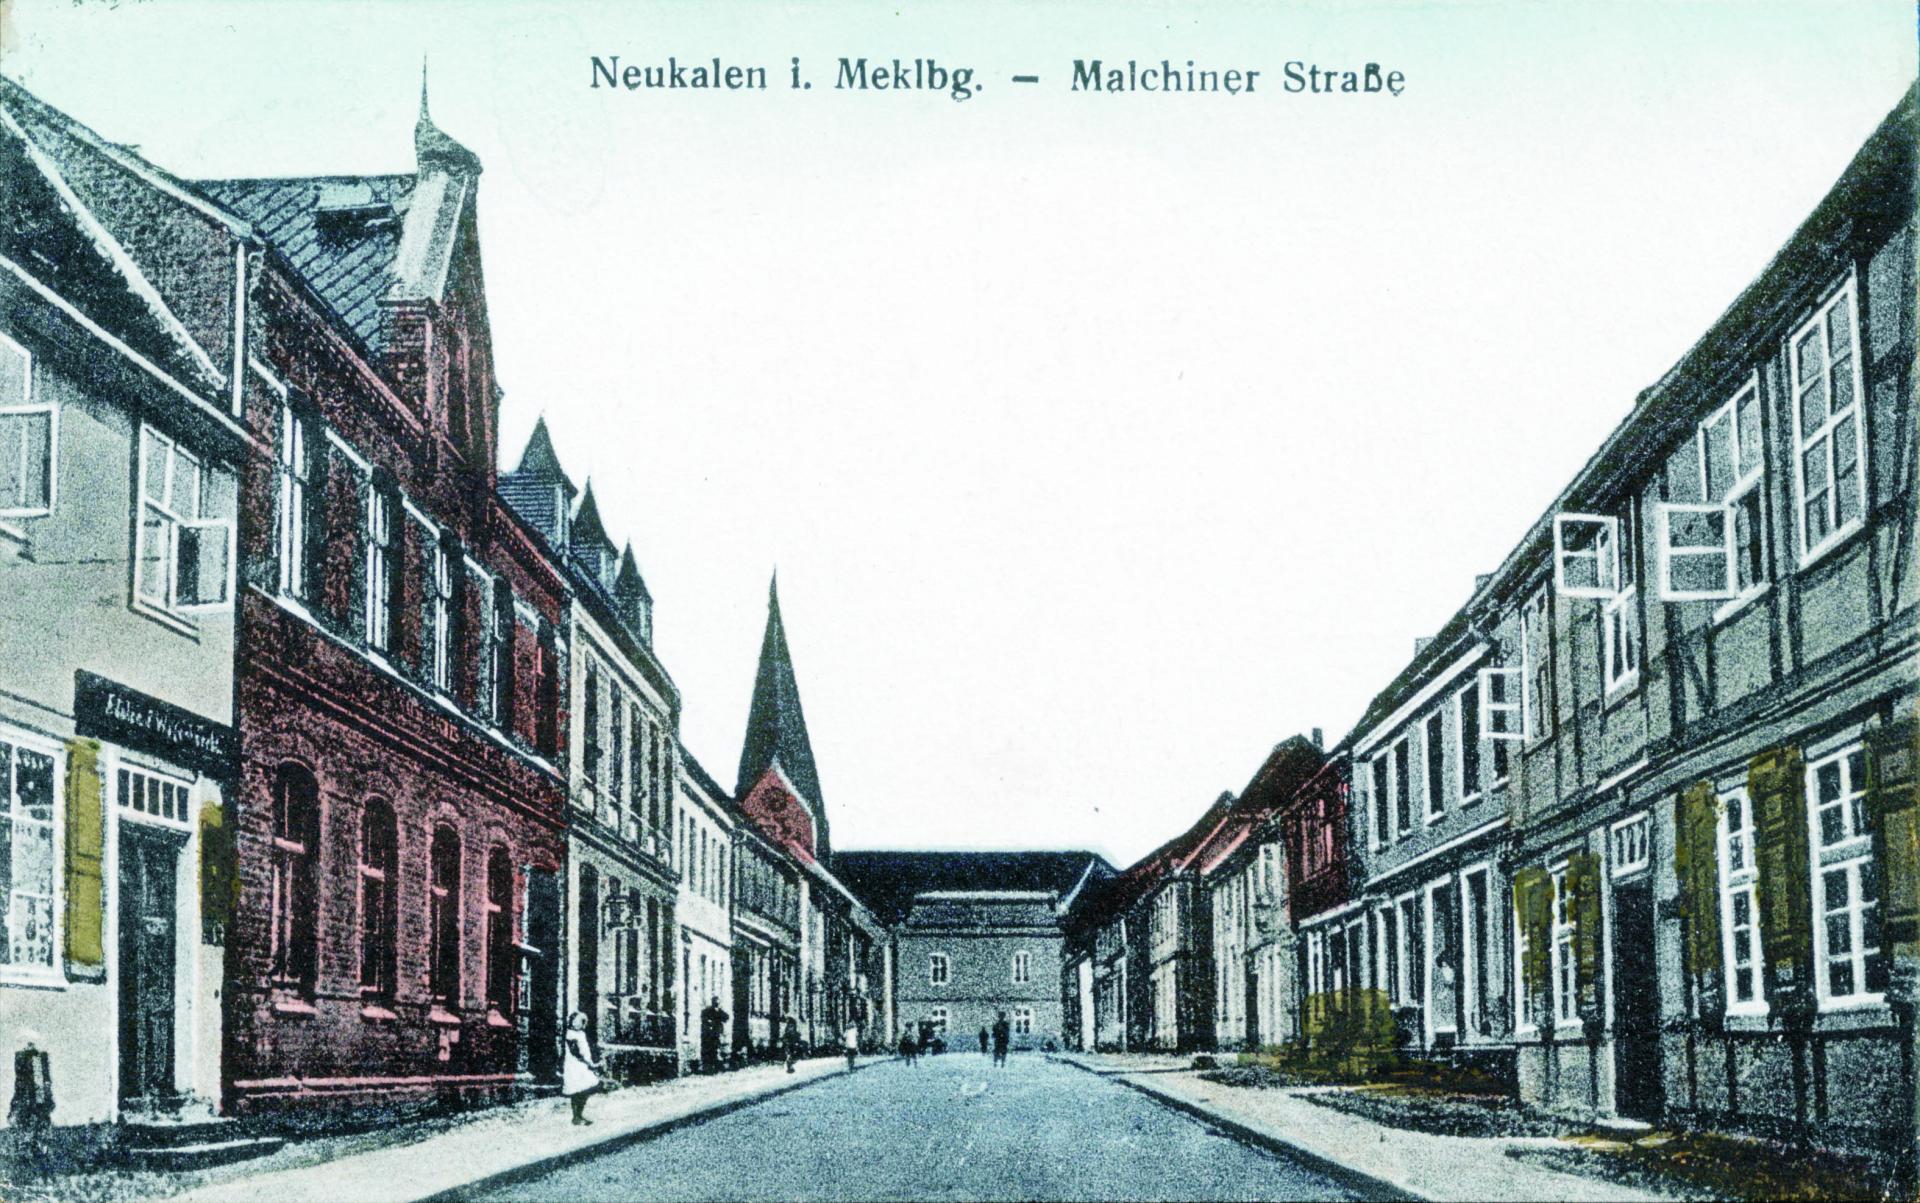 Ansichtskarte der Malchinerstraße von 1925 oder früher.